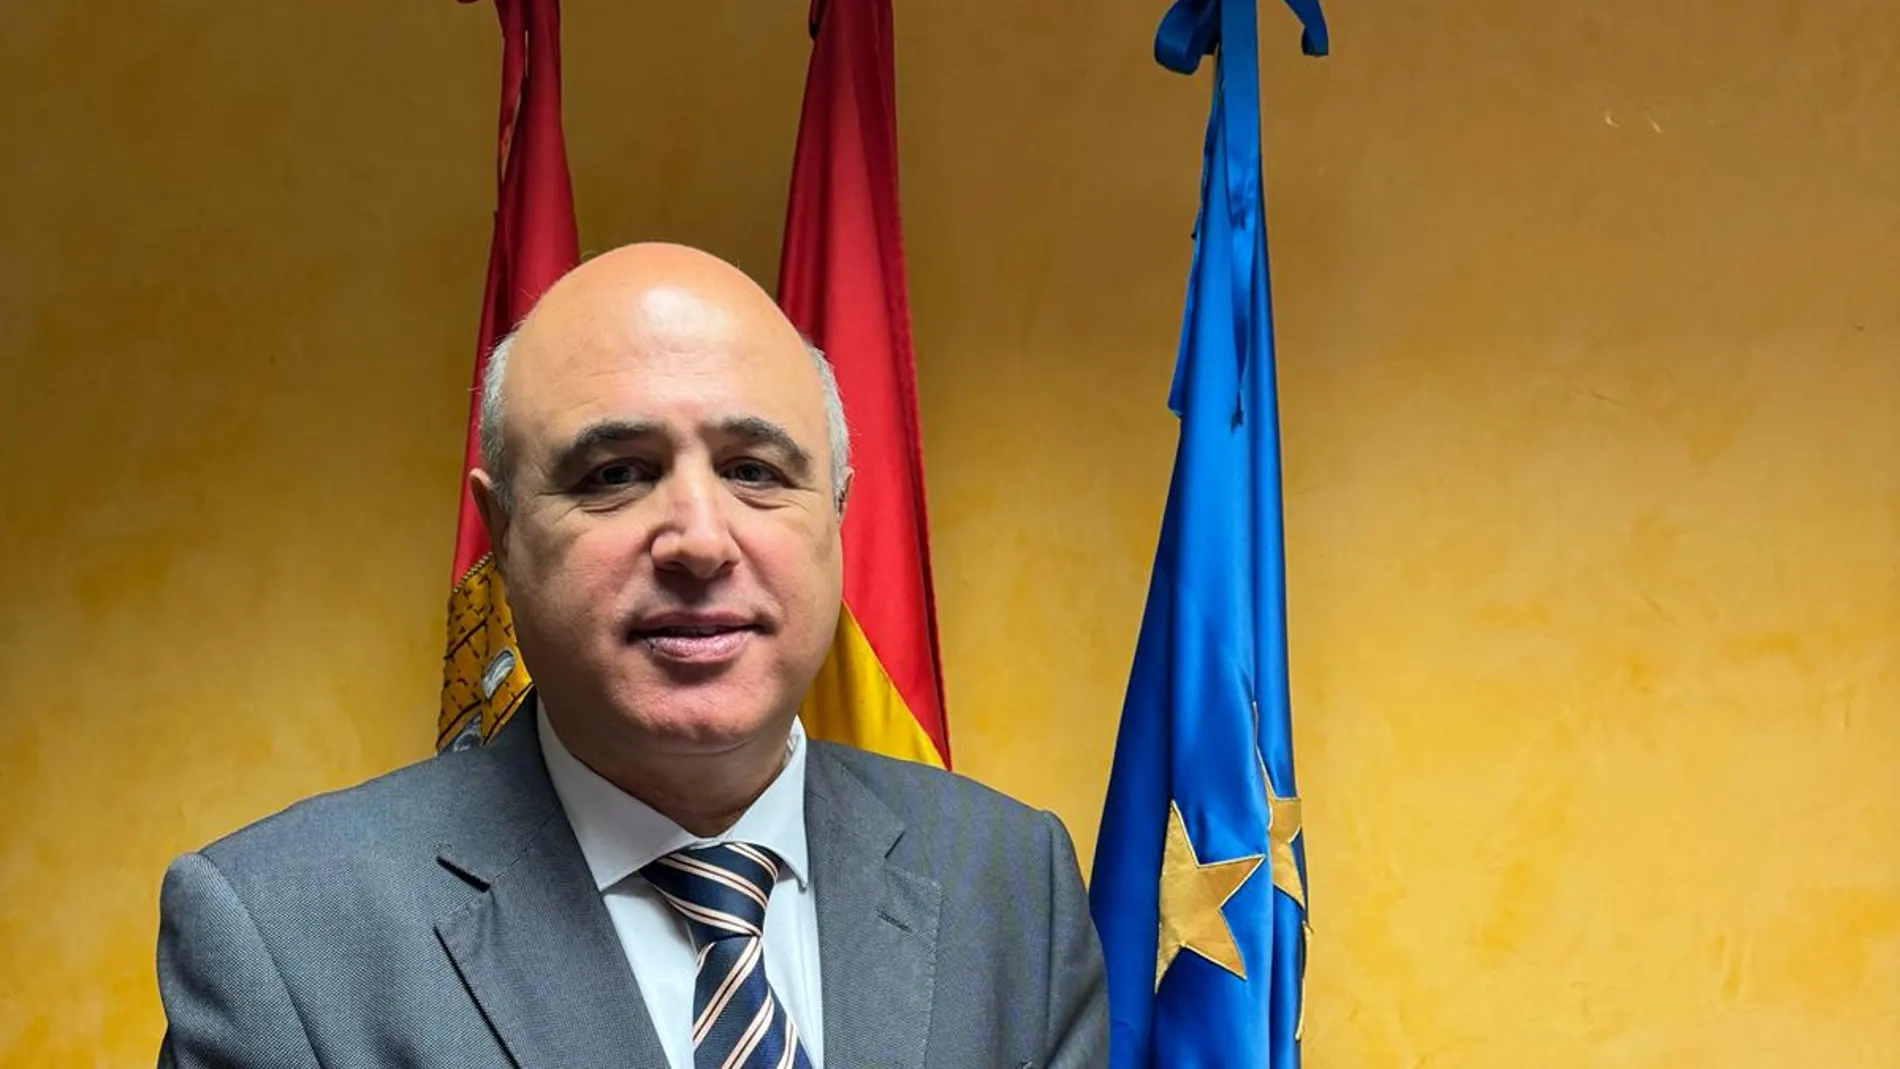 Jacinto Canales de Caso, nuevo subdelegado del Gobierno en Valladolid